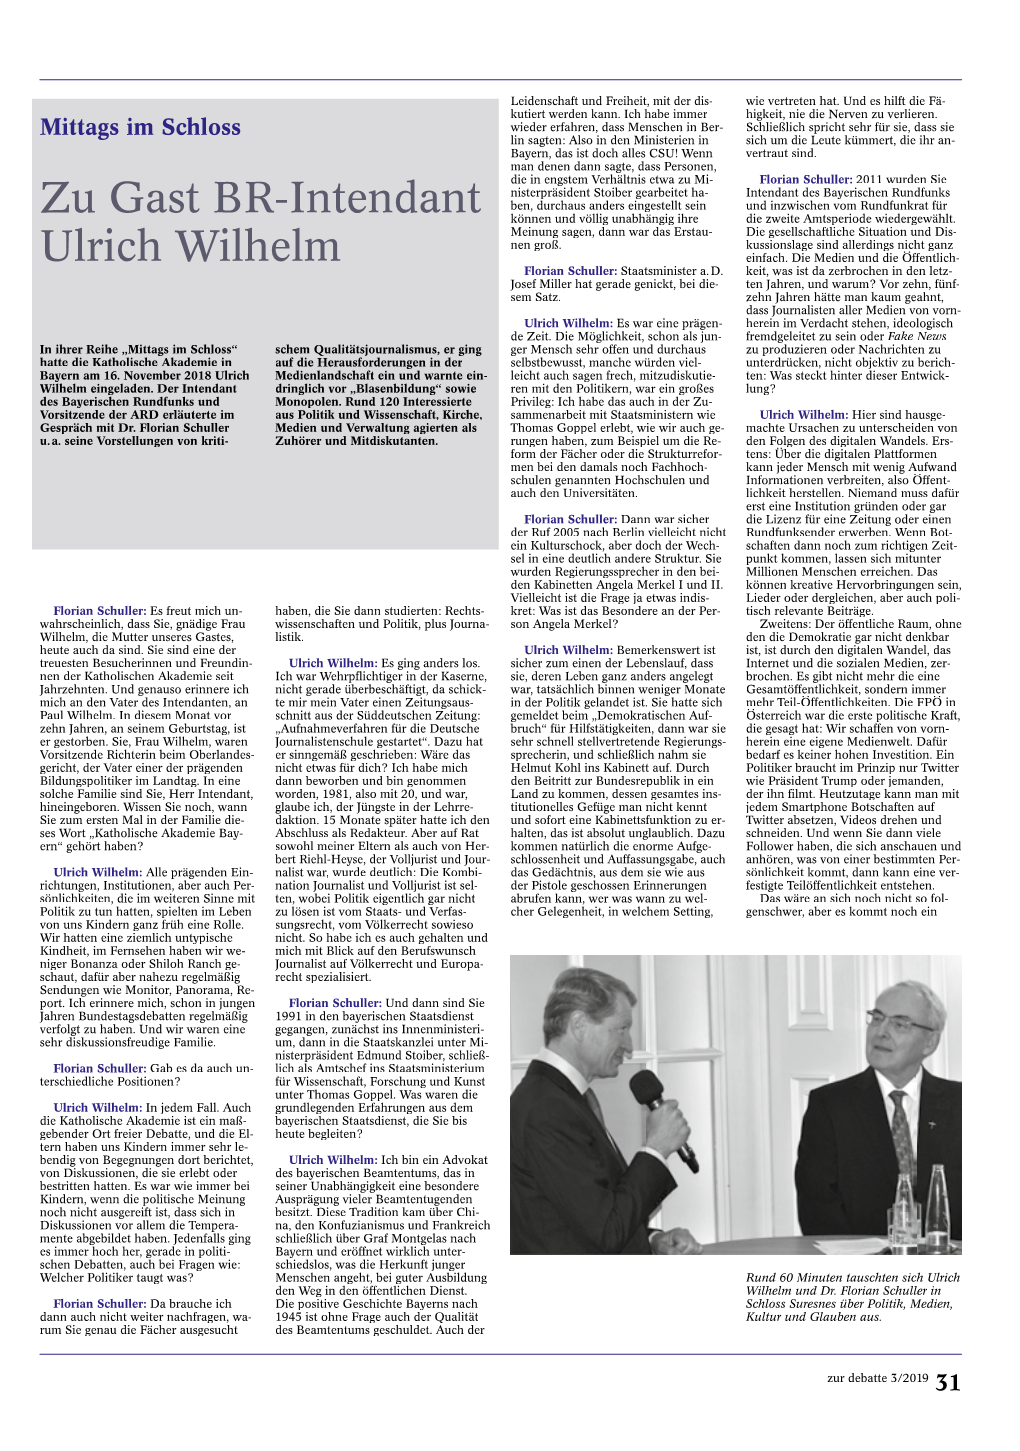 Zu Gast BR-Intendant Ulrich Wilhelm